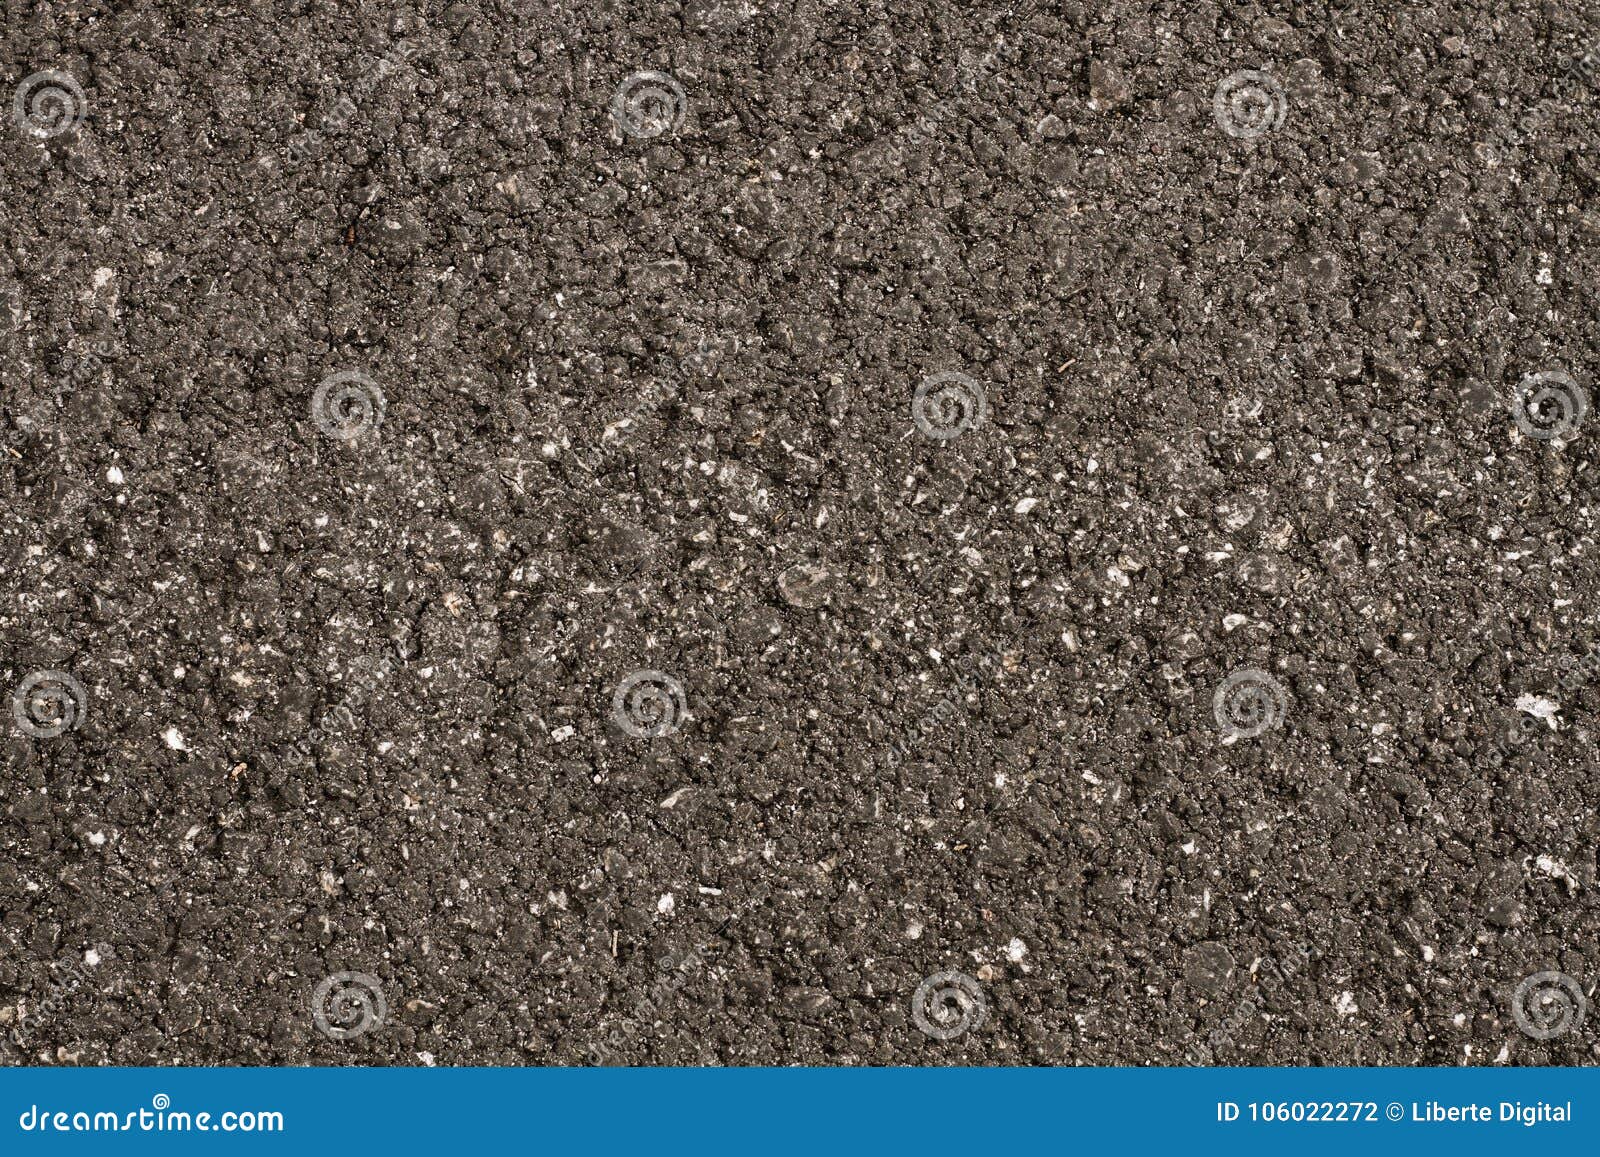 texture asphalt grey